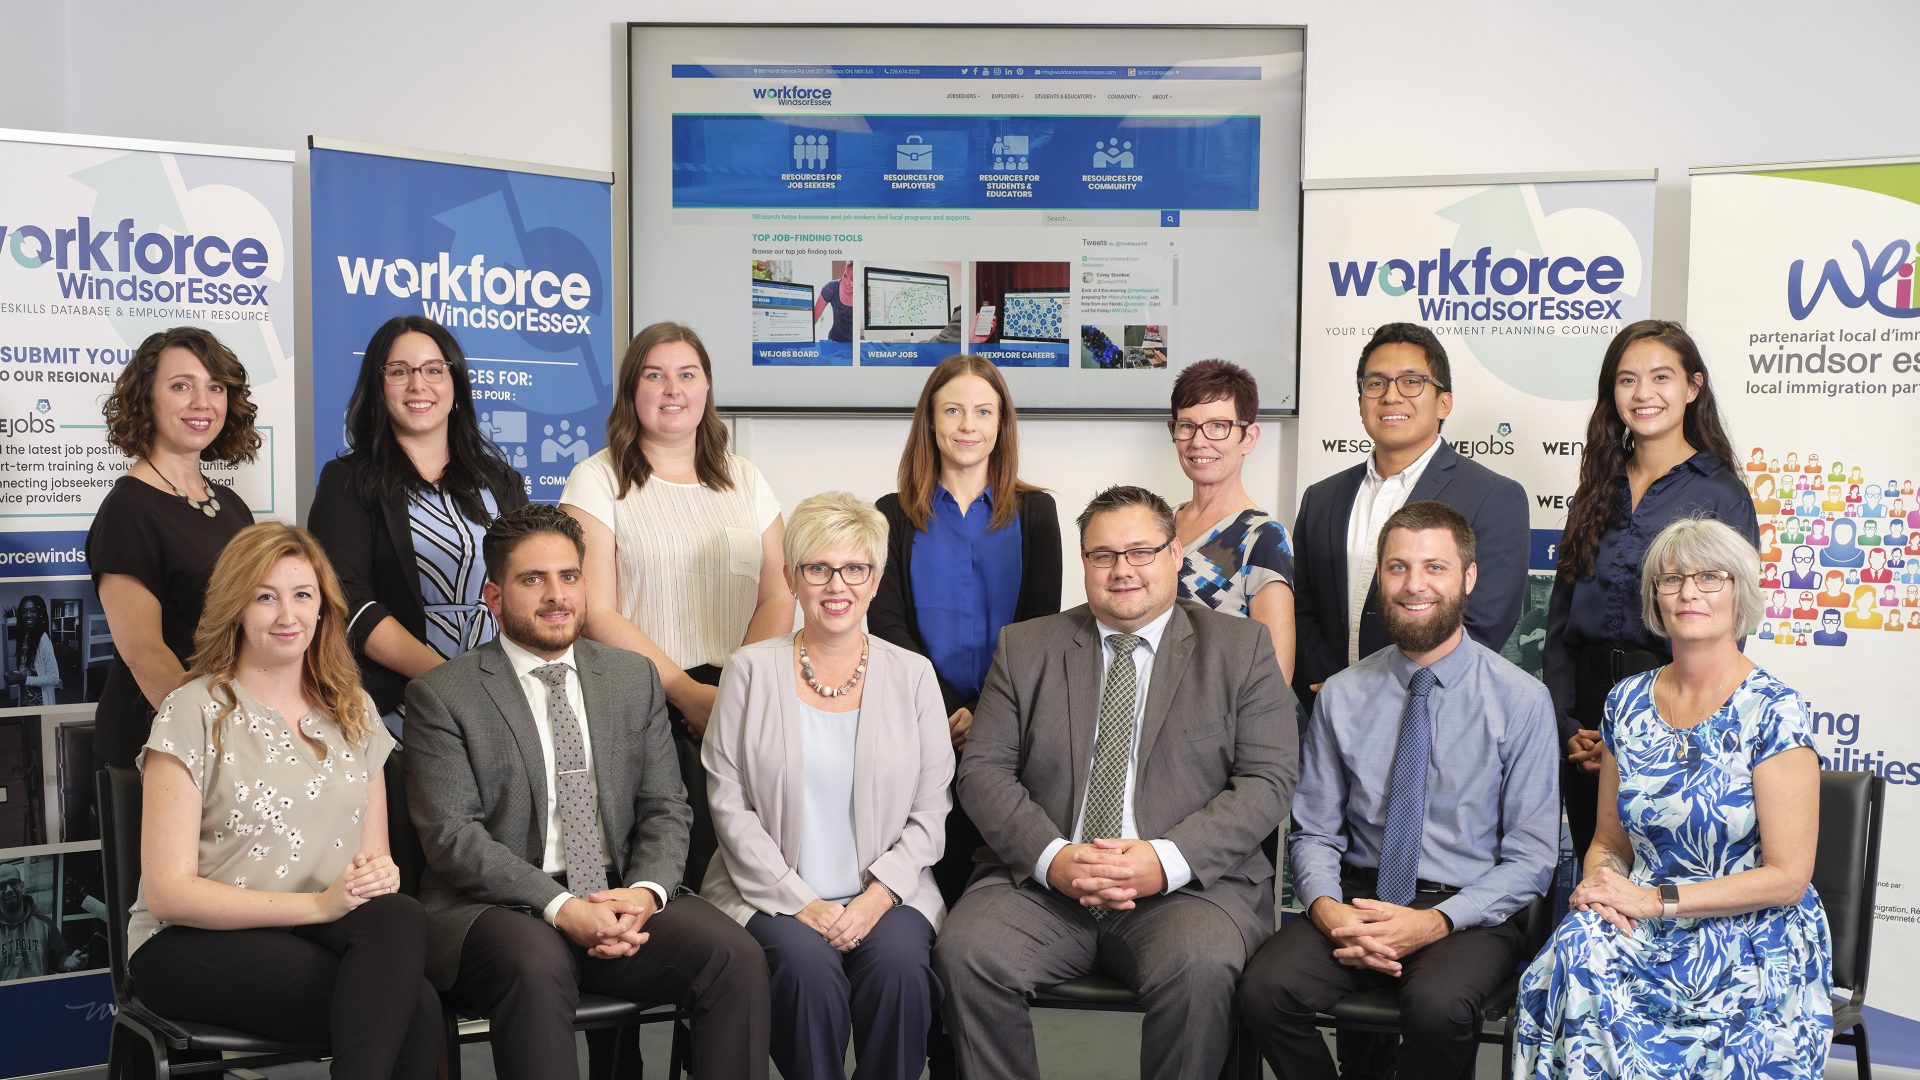 Workforce WindsorEssex team photo